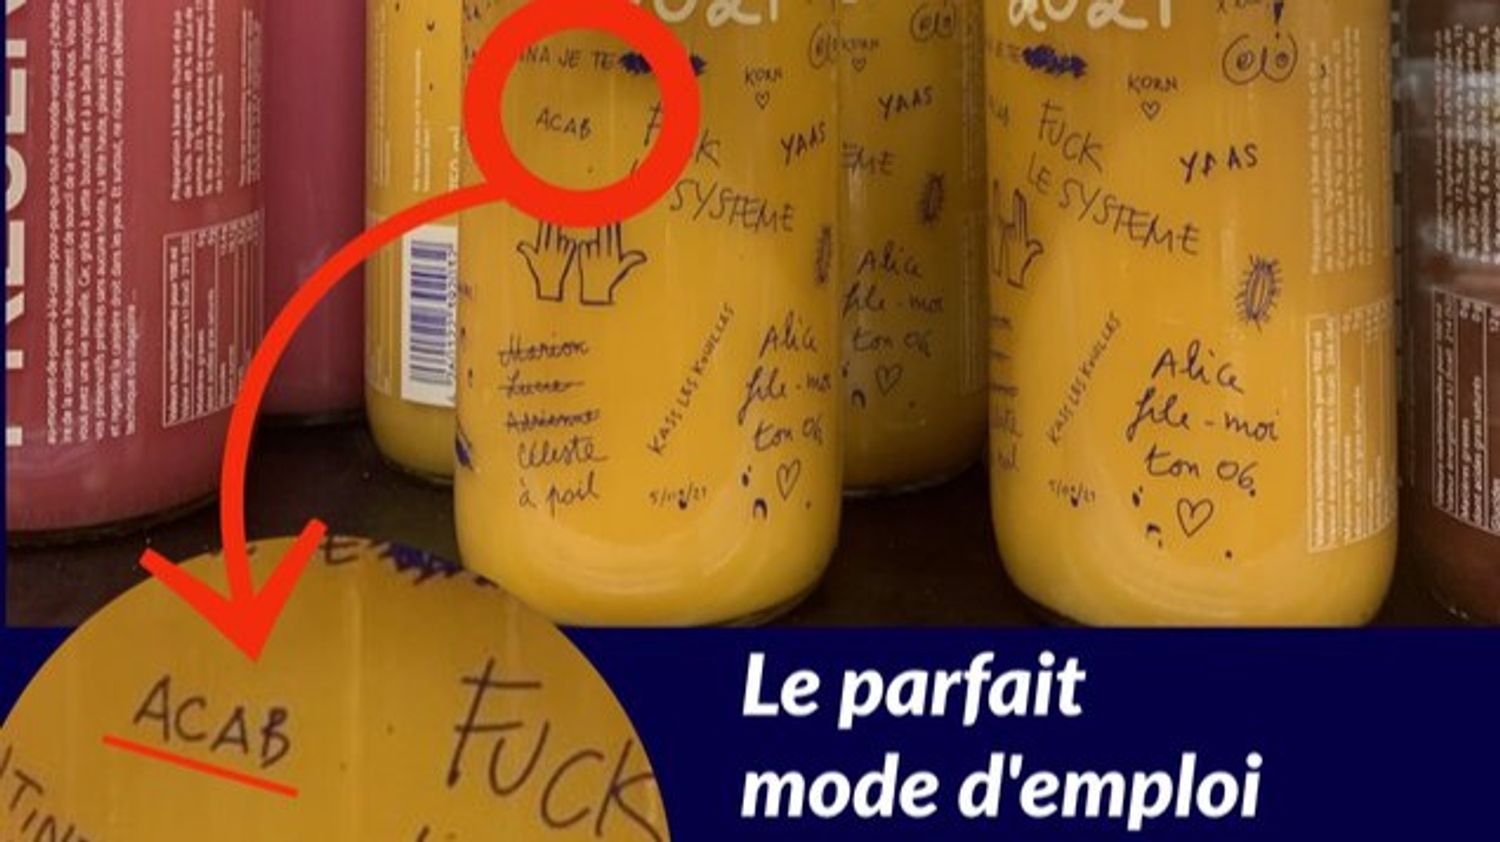 Paris : des slogans anti-police sur des bouteilles de smoothie 